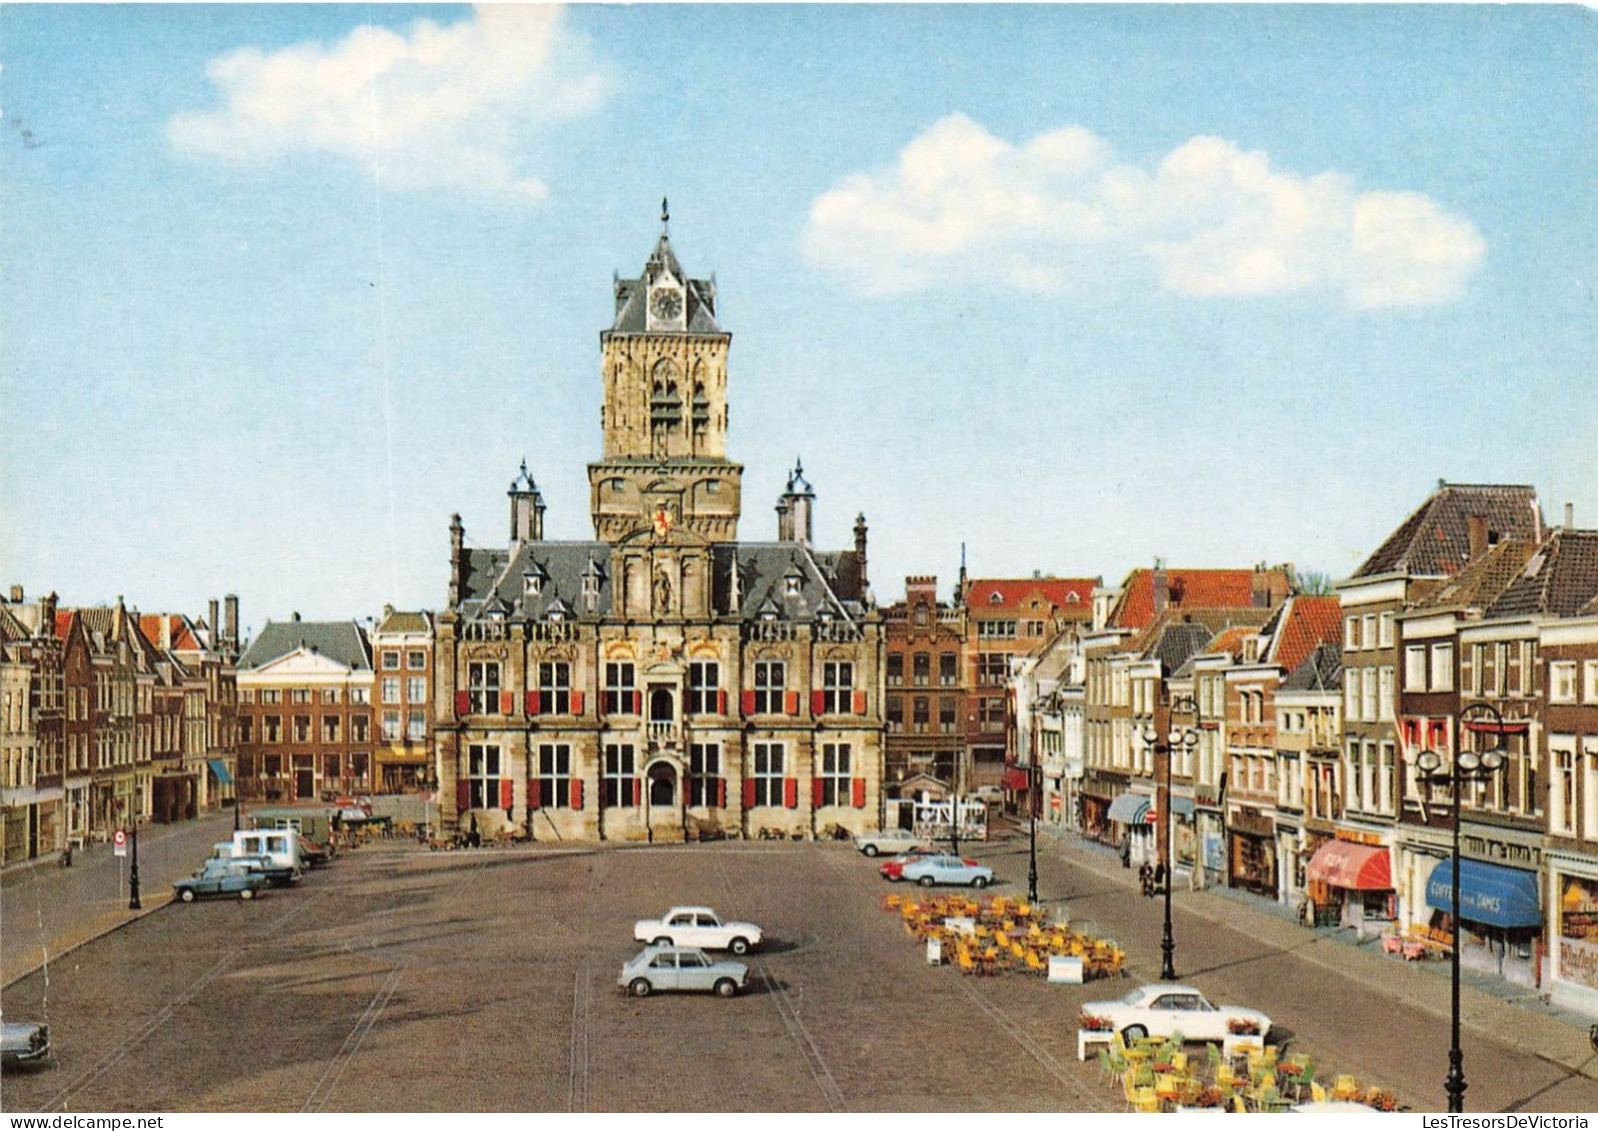 PAYS-BAS - Delft - Markt Met Standhuis - Vue Sur Une Place - Voiture - Vue Générale - Carte Postale - Delft